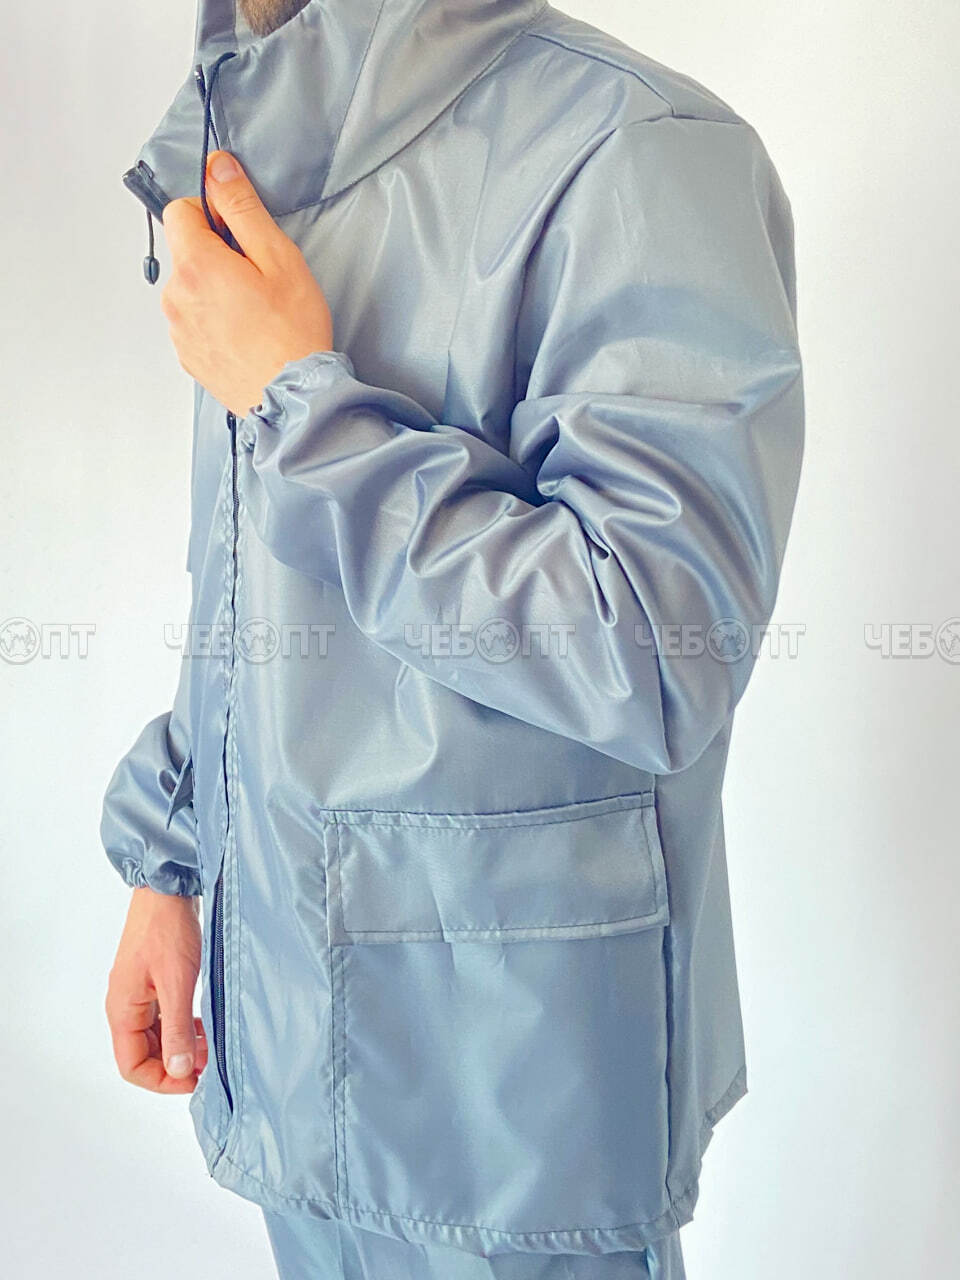 Костюм-дождевик (куртка, брюки),ЧЕБПРО,размер 44-46,100% полиэстер, Арт. ДожКост/серый, МПС [3/15] СобПр. ЧЕБОПТ.